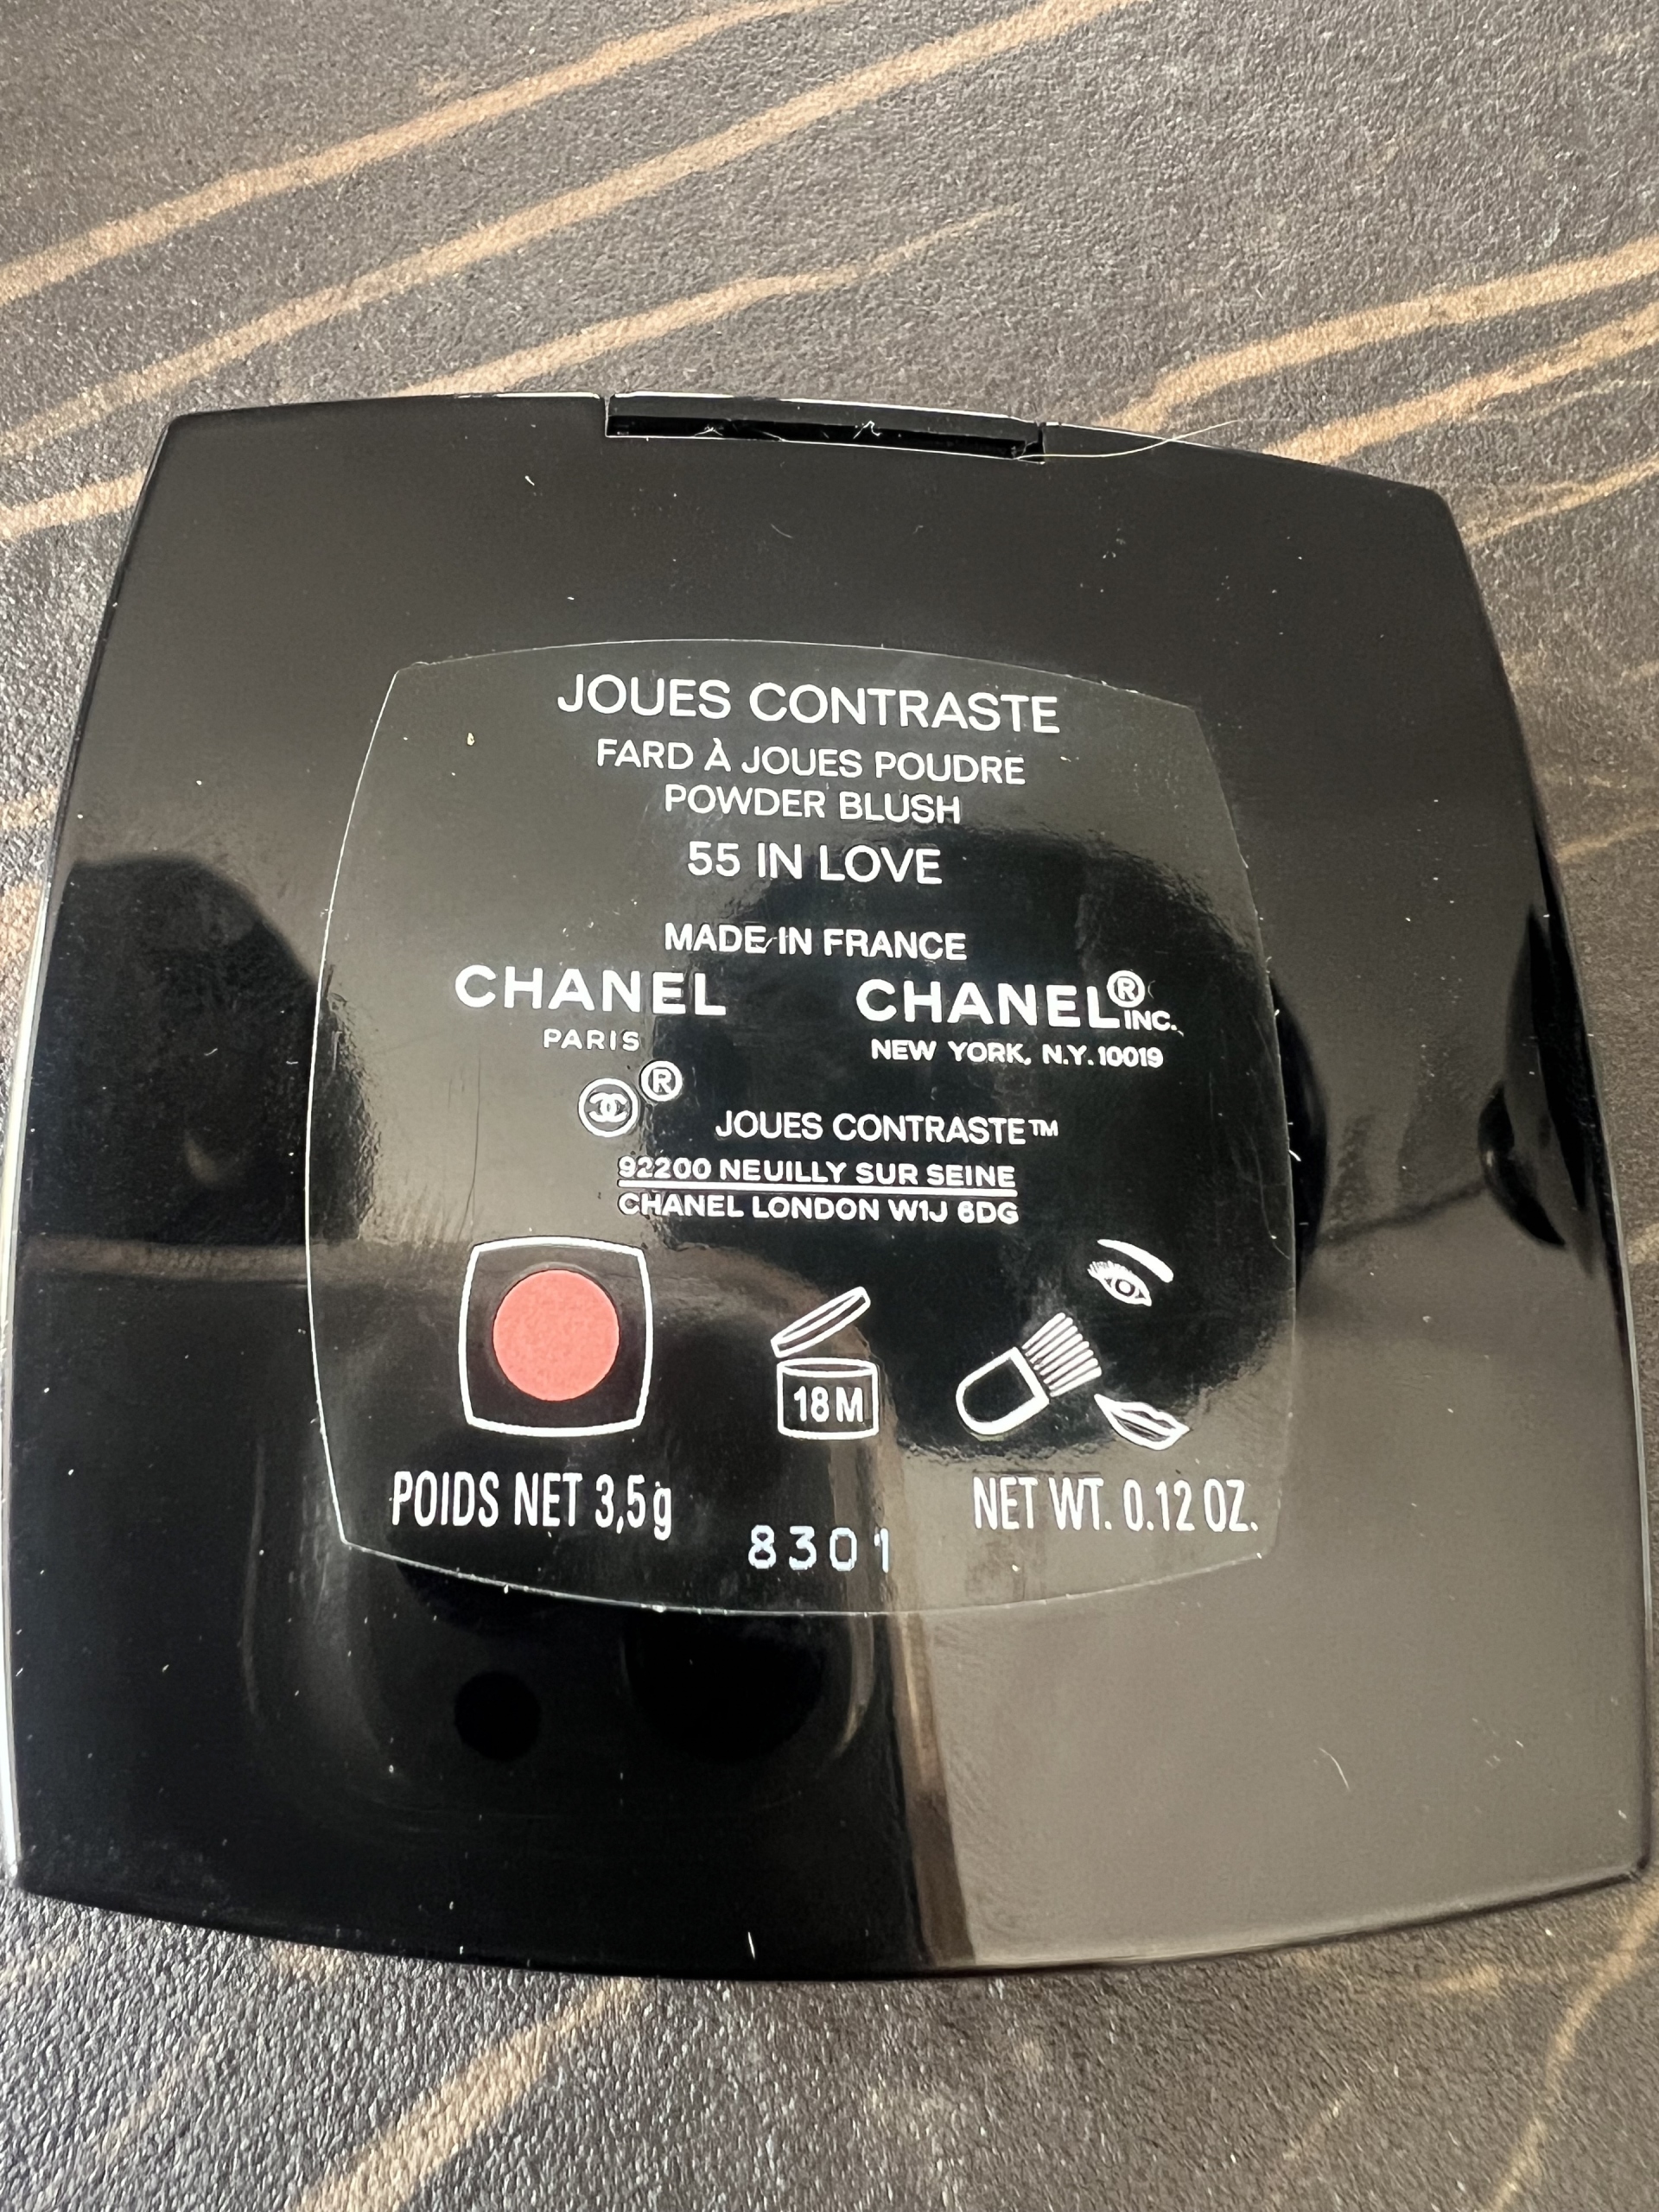 Chanel Powder Blush Joues Contraste 55-in Love